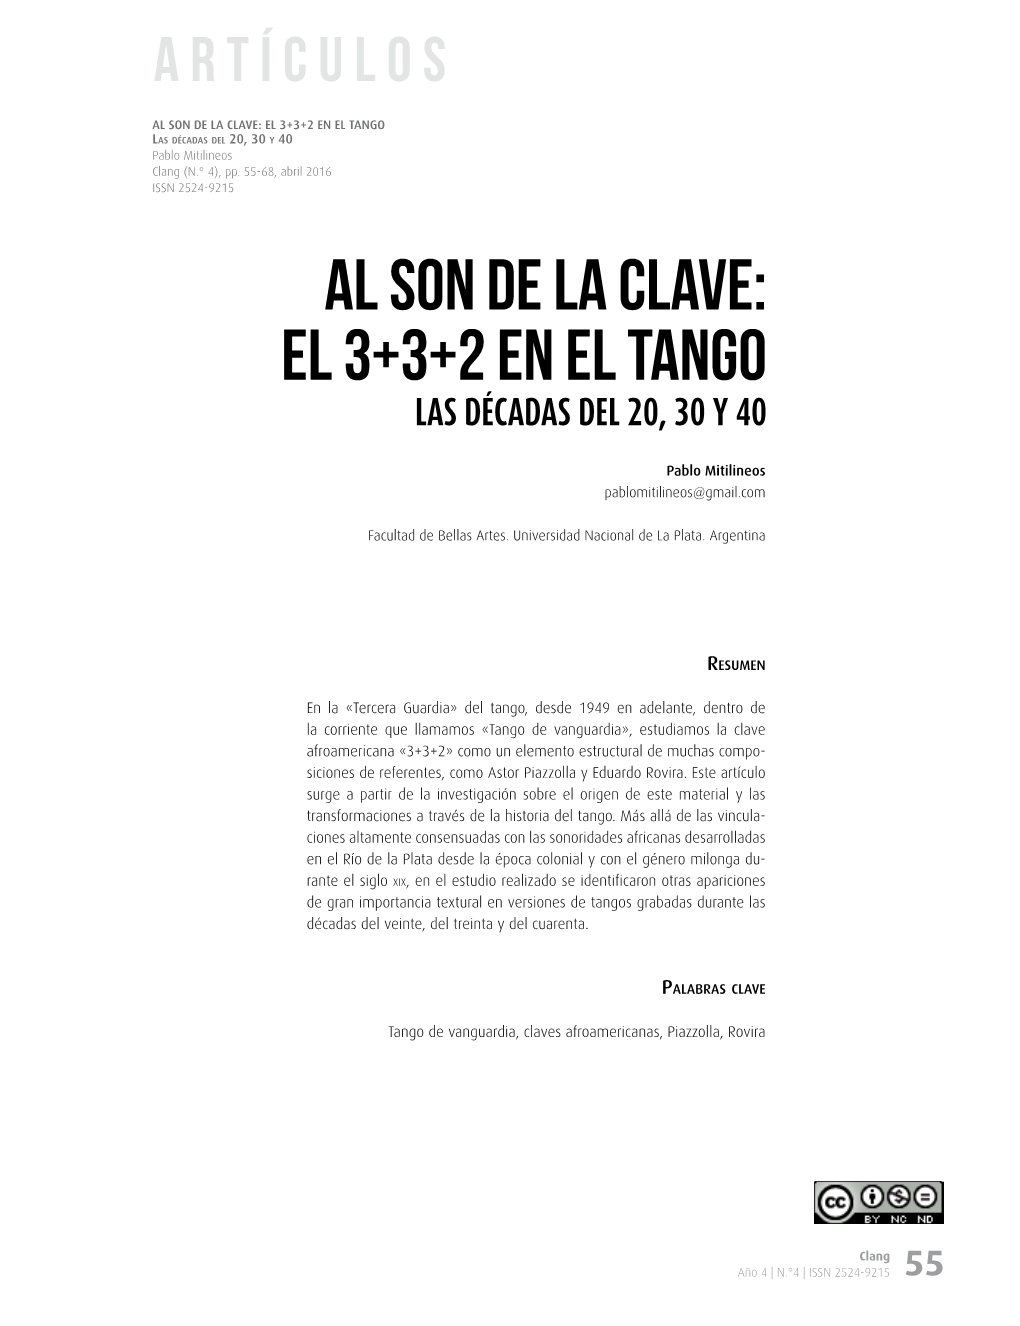 Al Son De La Clave: El 3+3+2 En El Tango Las Décadas Del 20, 30 Y 40 Pablo Mitilineos Clang (N.° 4), Pp